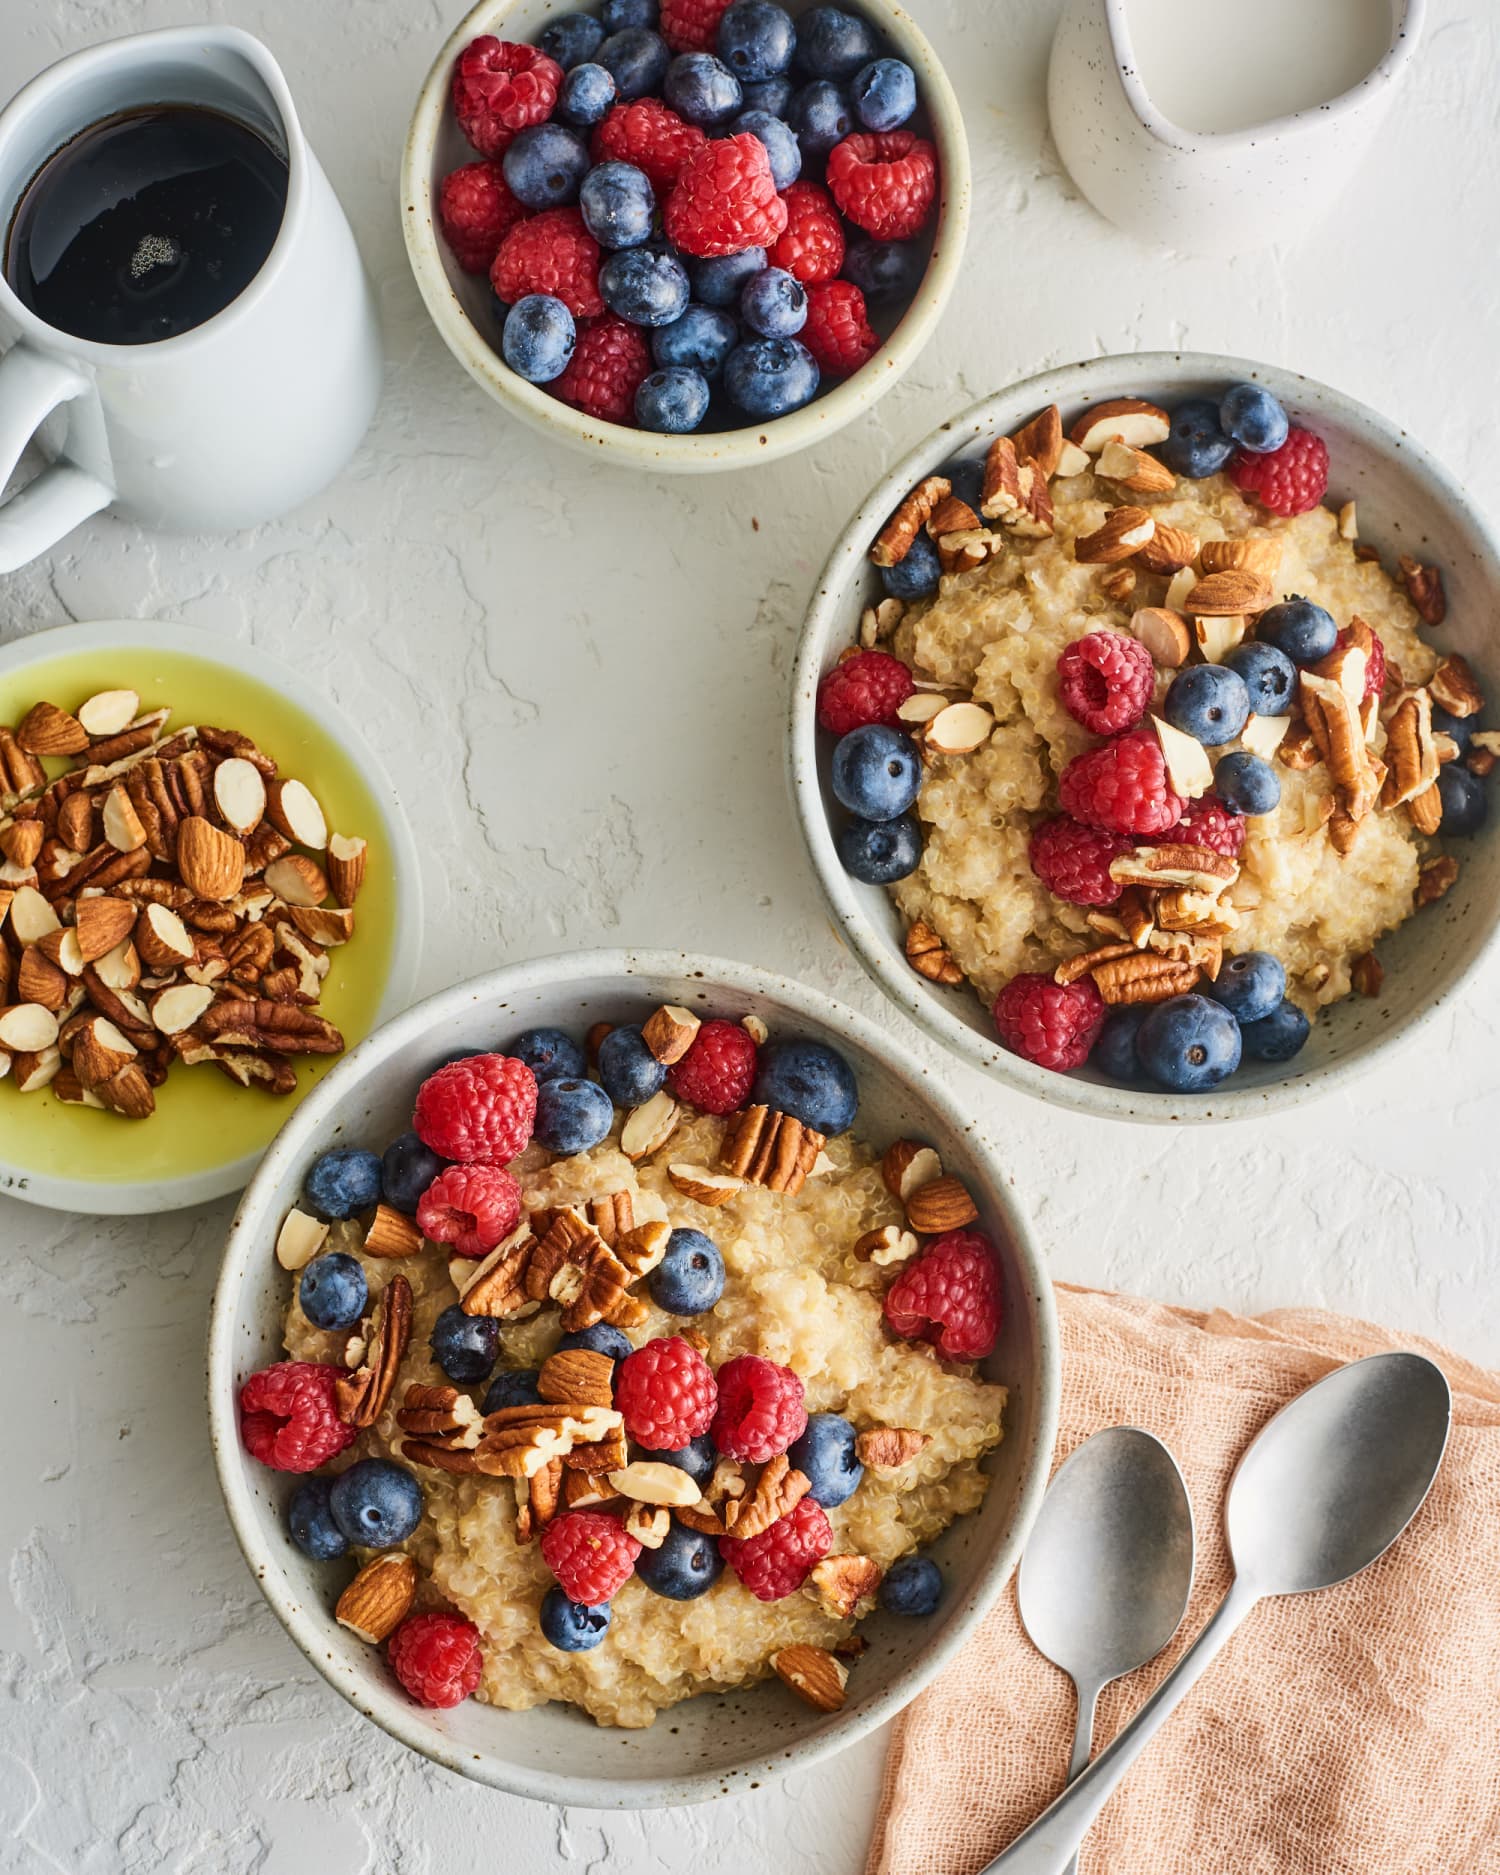 55 Best Healthy Breakfast Ideas - Easy Recipes for Healthy Breakfast ...